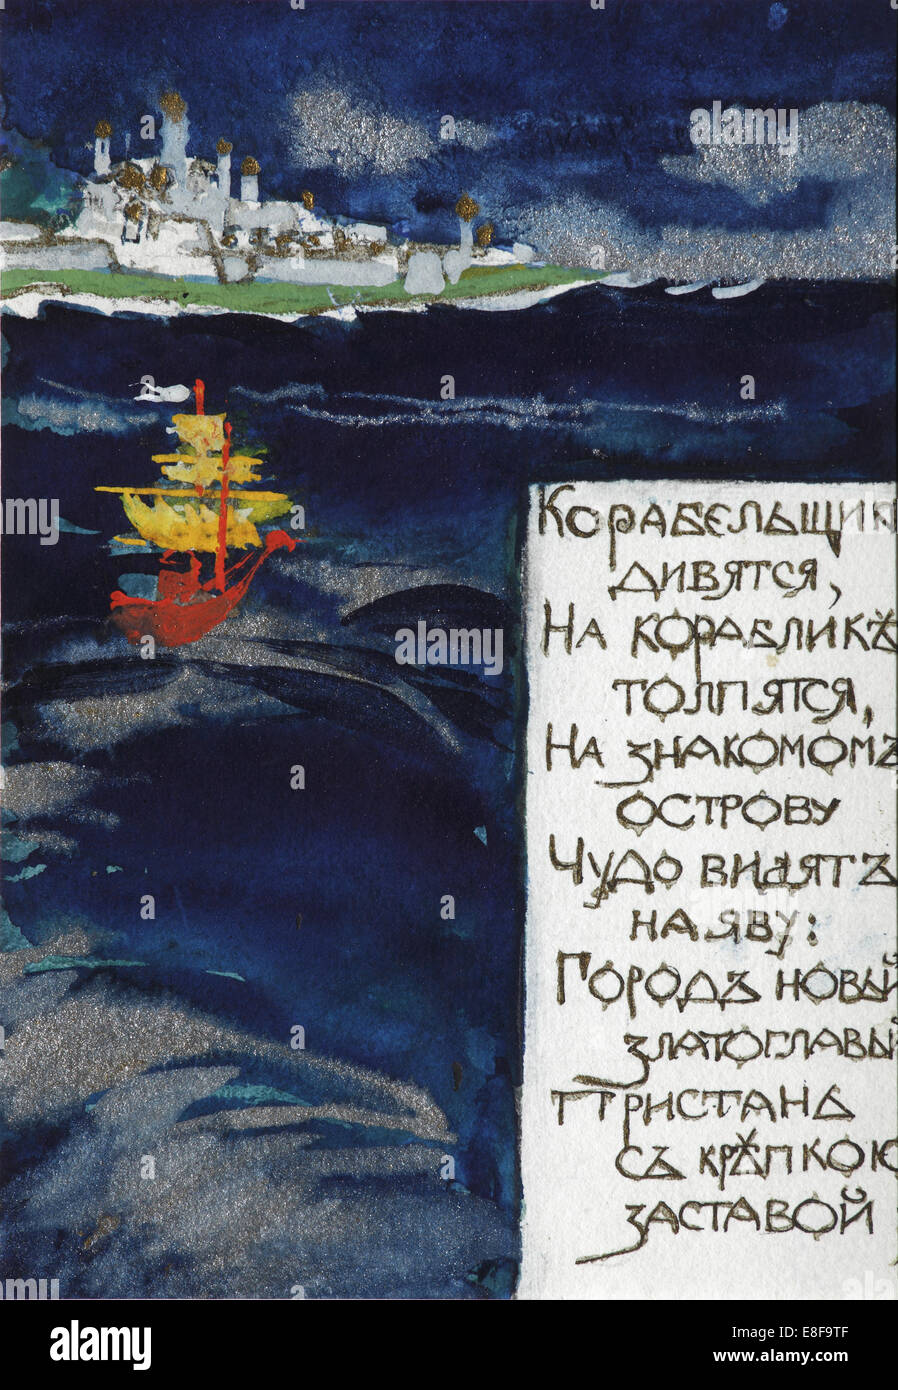 Illustration for the Fairy tale of the Tsar Saltan by A. Pushkin. Artist: Malyutin, Sergei Vasilyevich (1859-1937) Stock Photo